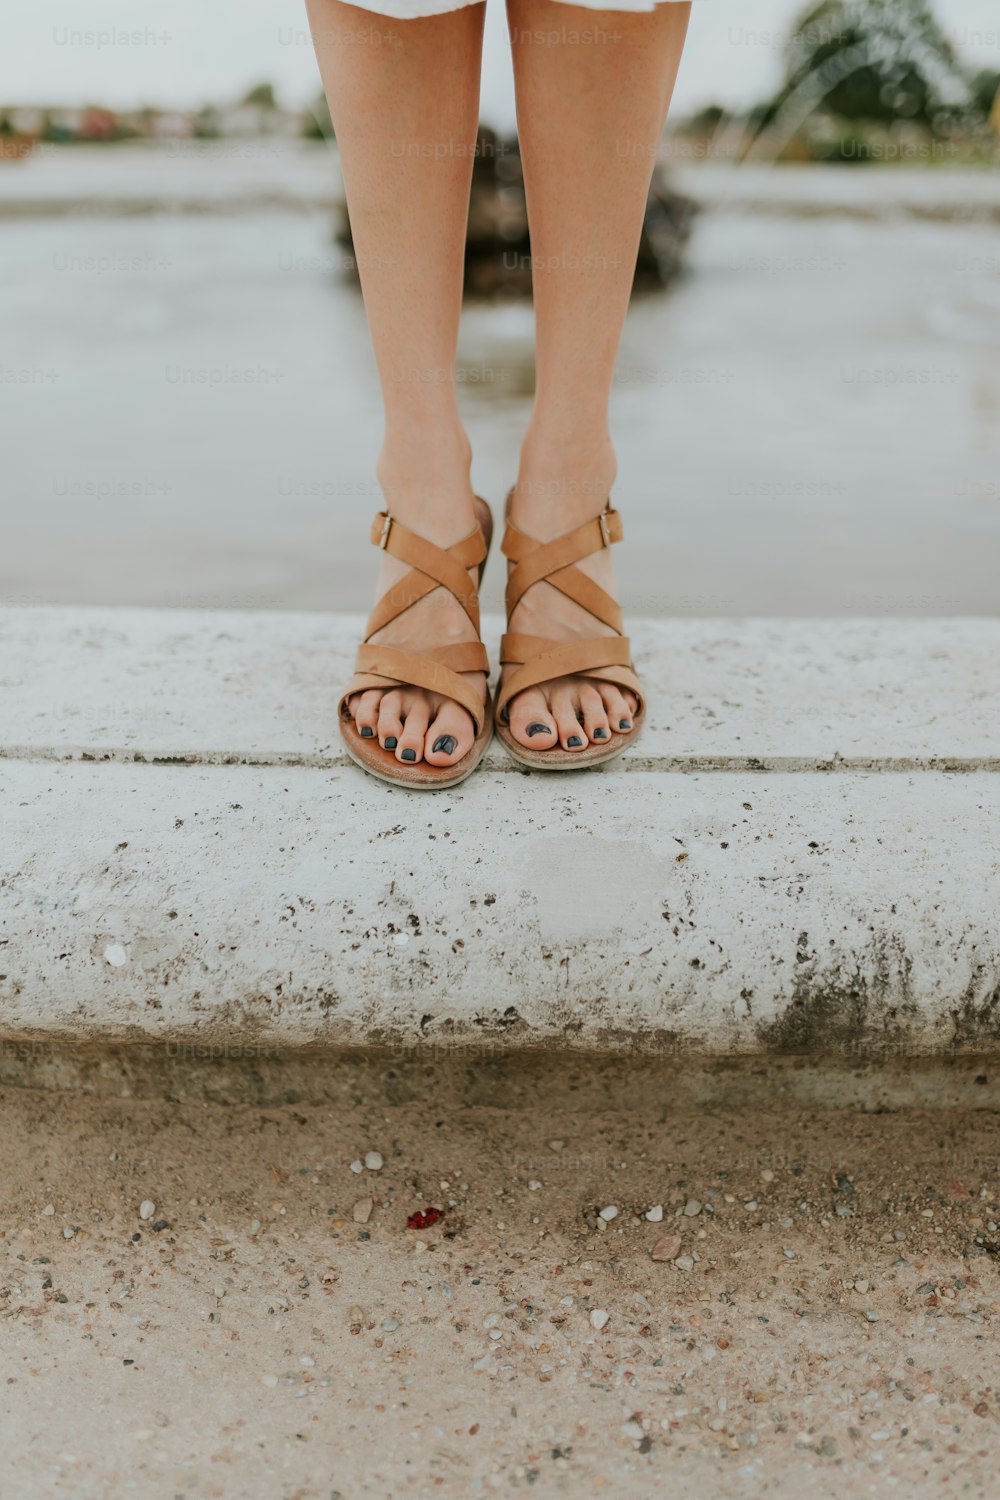 Les pieds d’une femme en sandales debout sur un rebord